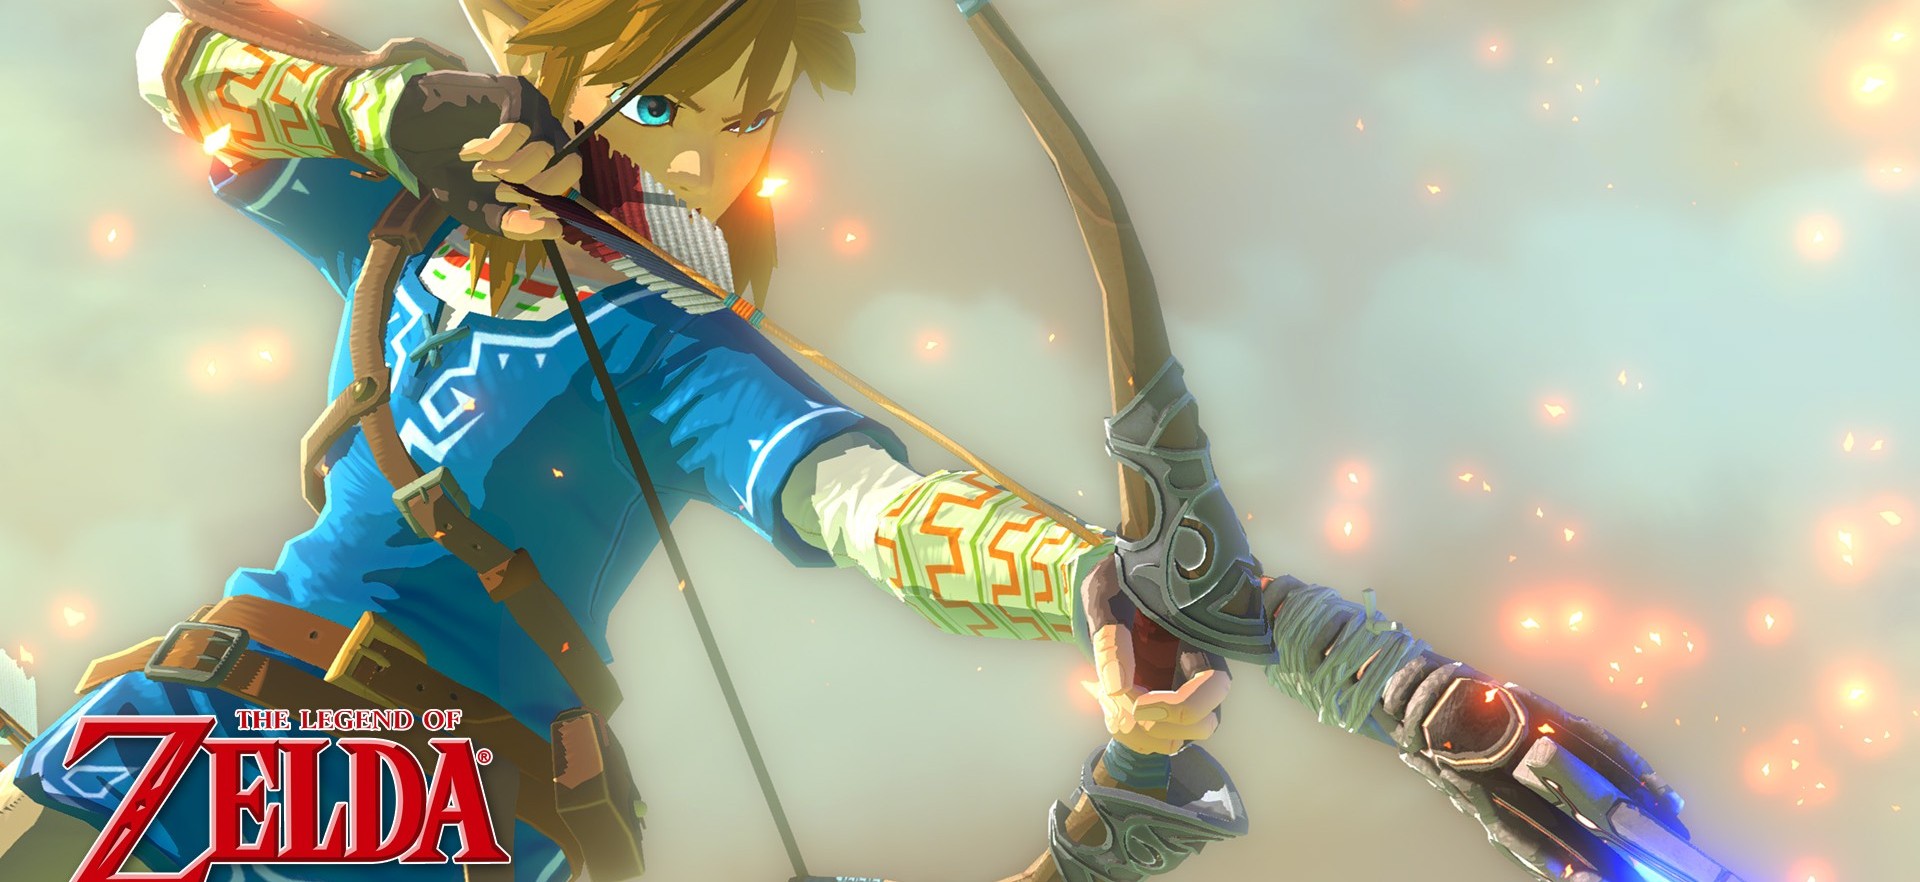 The Legend of Zelda Wii U Desktop Wallpapers are Amazing